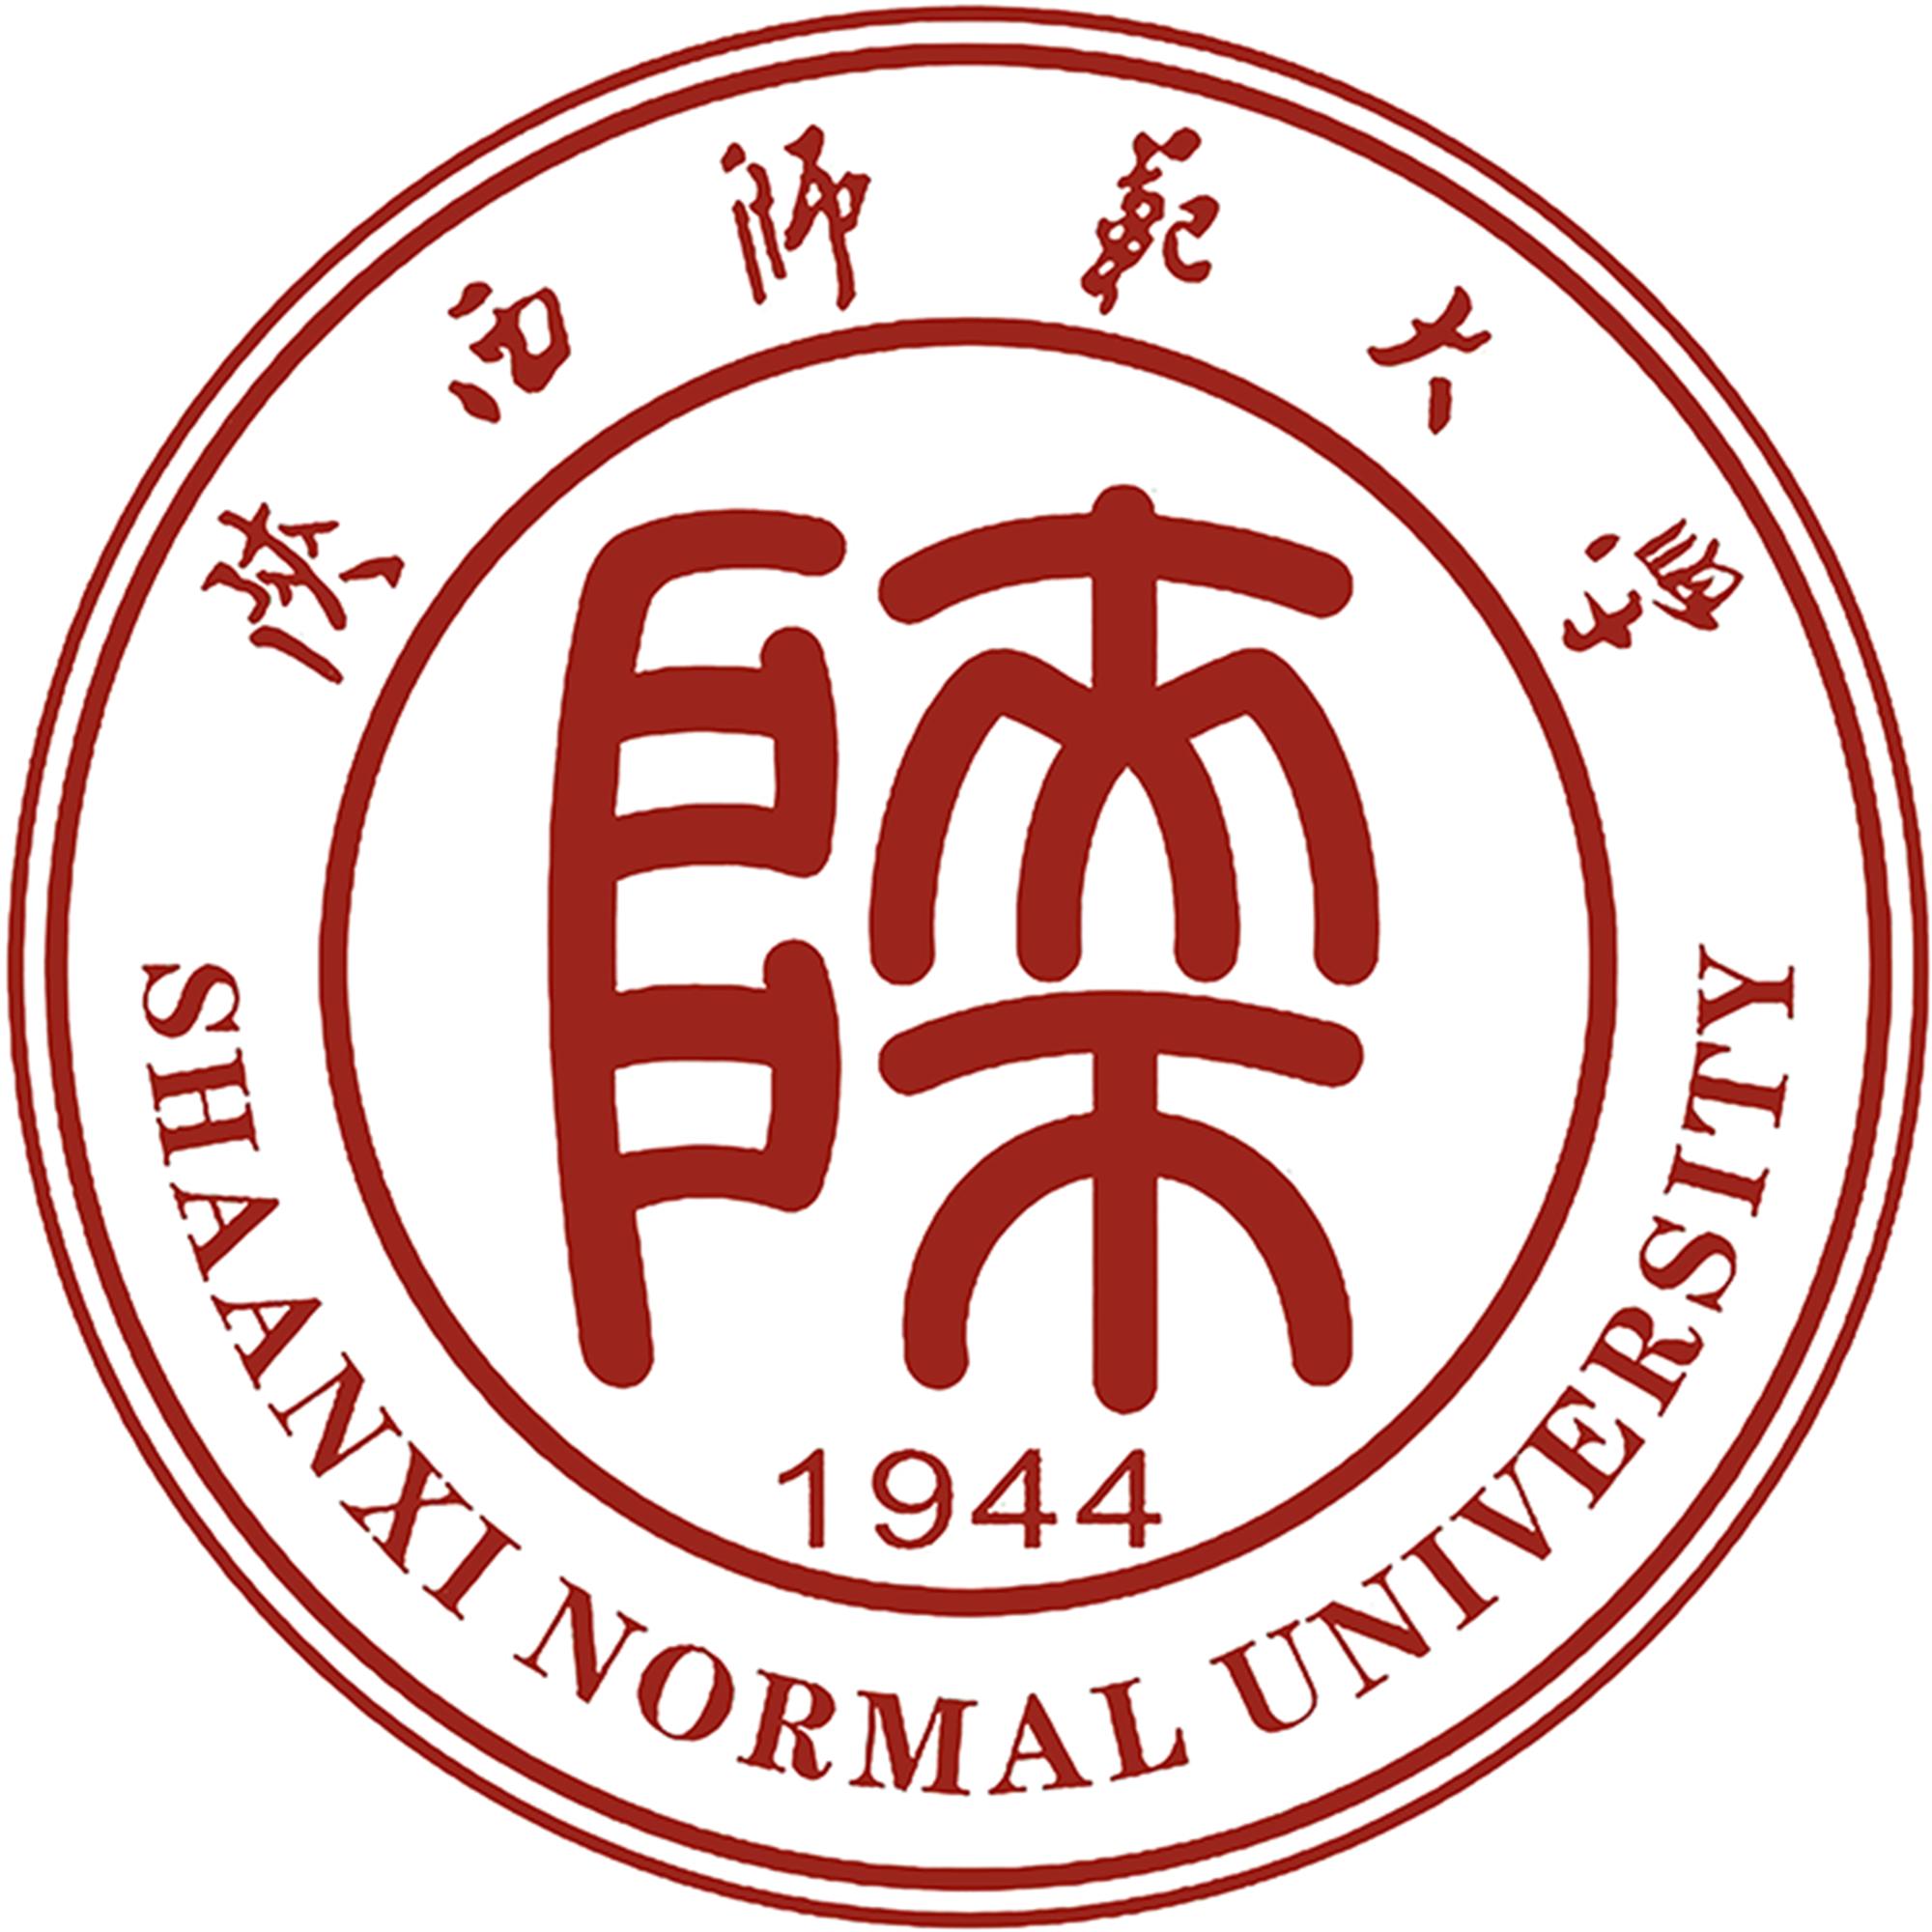 北京农业大学校徽图片